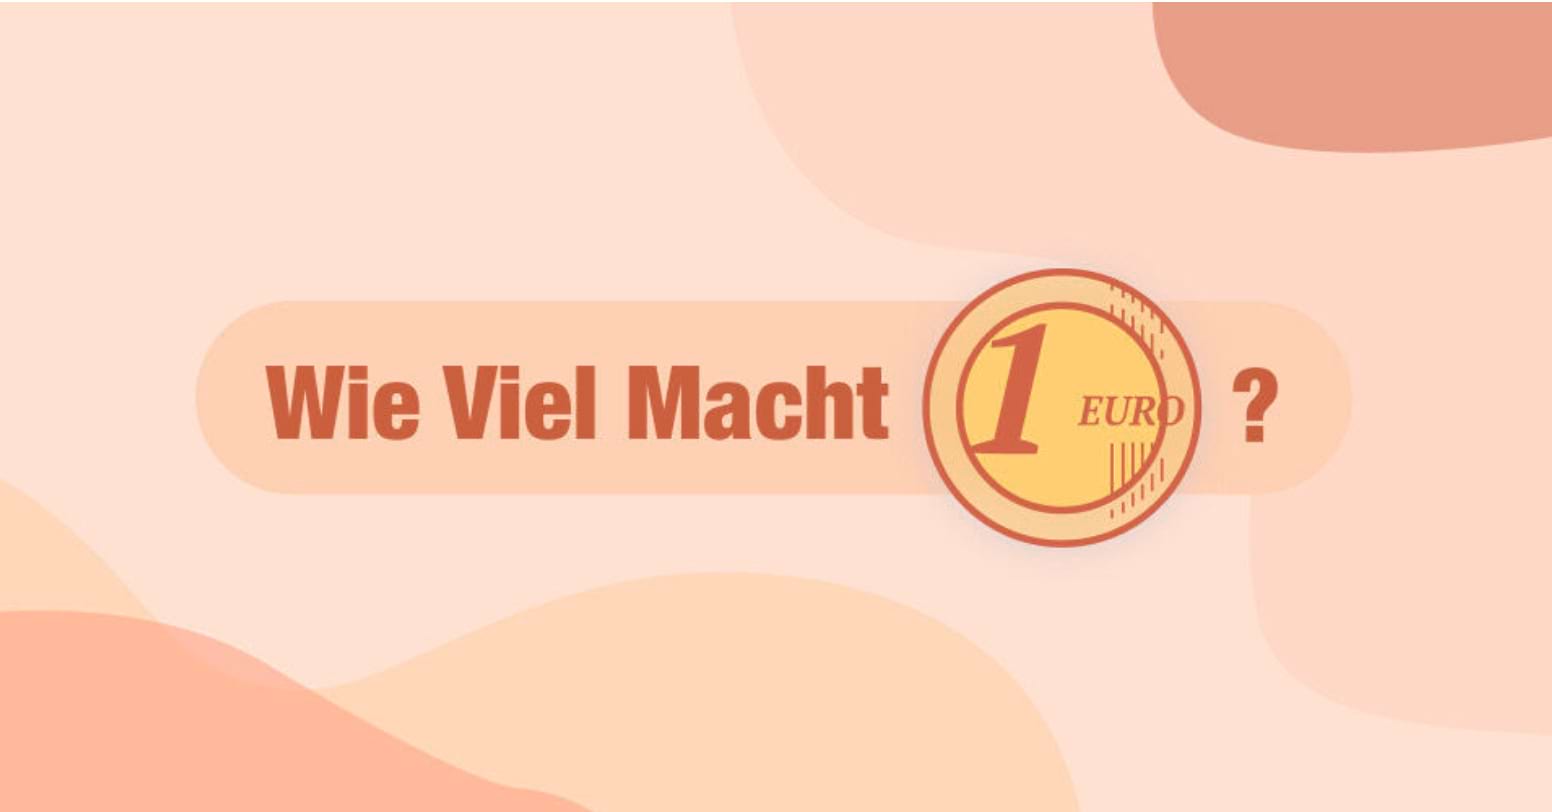 Wir sehen die Kampagnengrafik der Wie Viel Macht 1 Euro-Kampagne: Der Slogan Wie Viel Macht in dunkelrot , daneben eine 1-Euro-Münze und ein ?. Der Hintergrund ist eingefärbt mit geschwungenen Formen in beige und unterschiedlichen rosa bis dunkelroten Farbtönen.